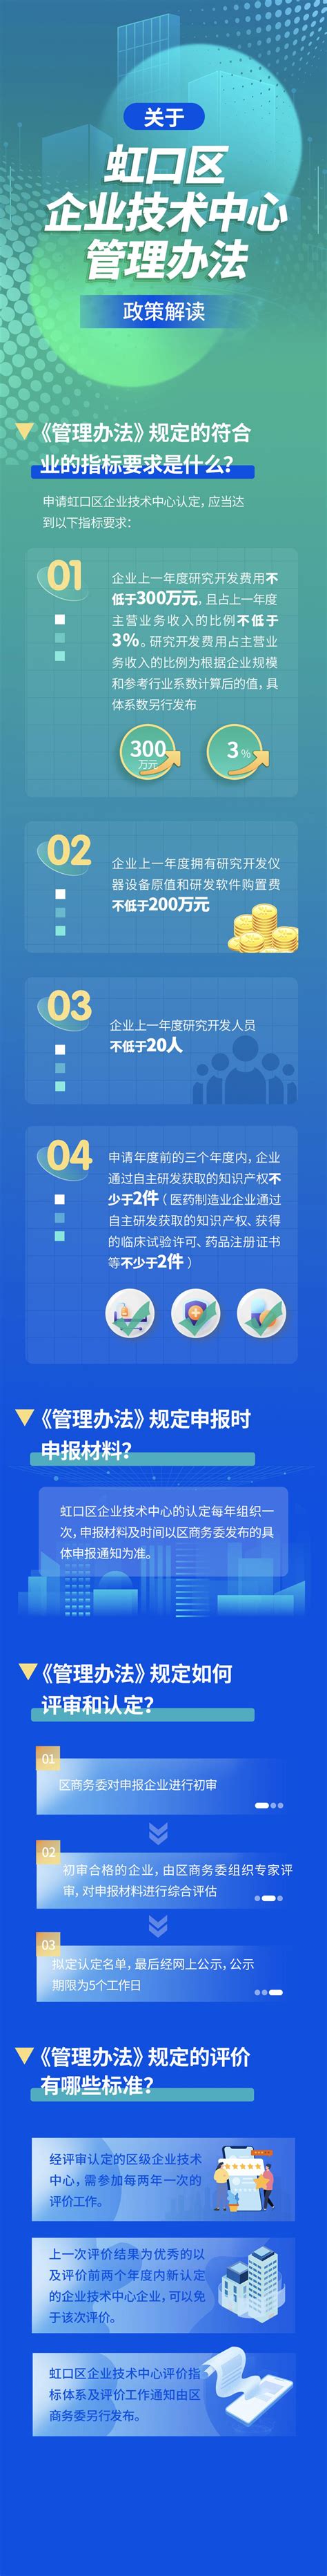 虹口区生态环境局发布《2021年度虹口区生态环境状况公报》-上海市虹口区人民政府